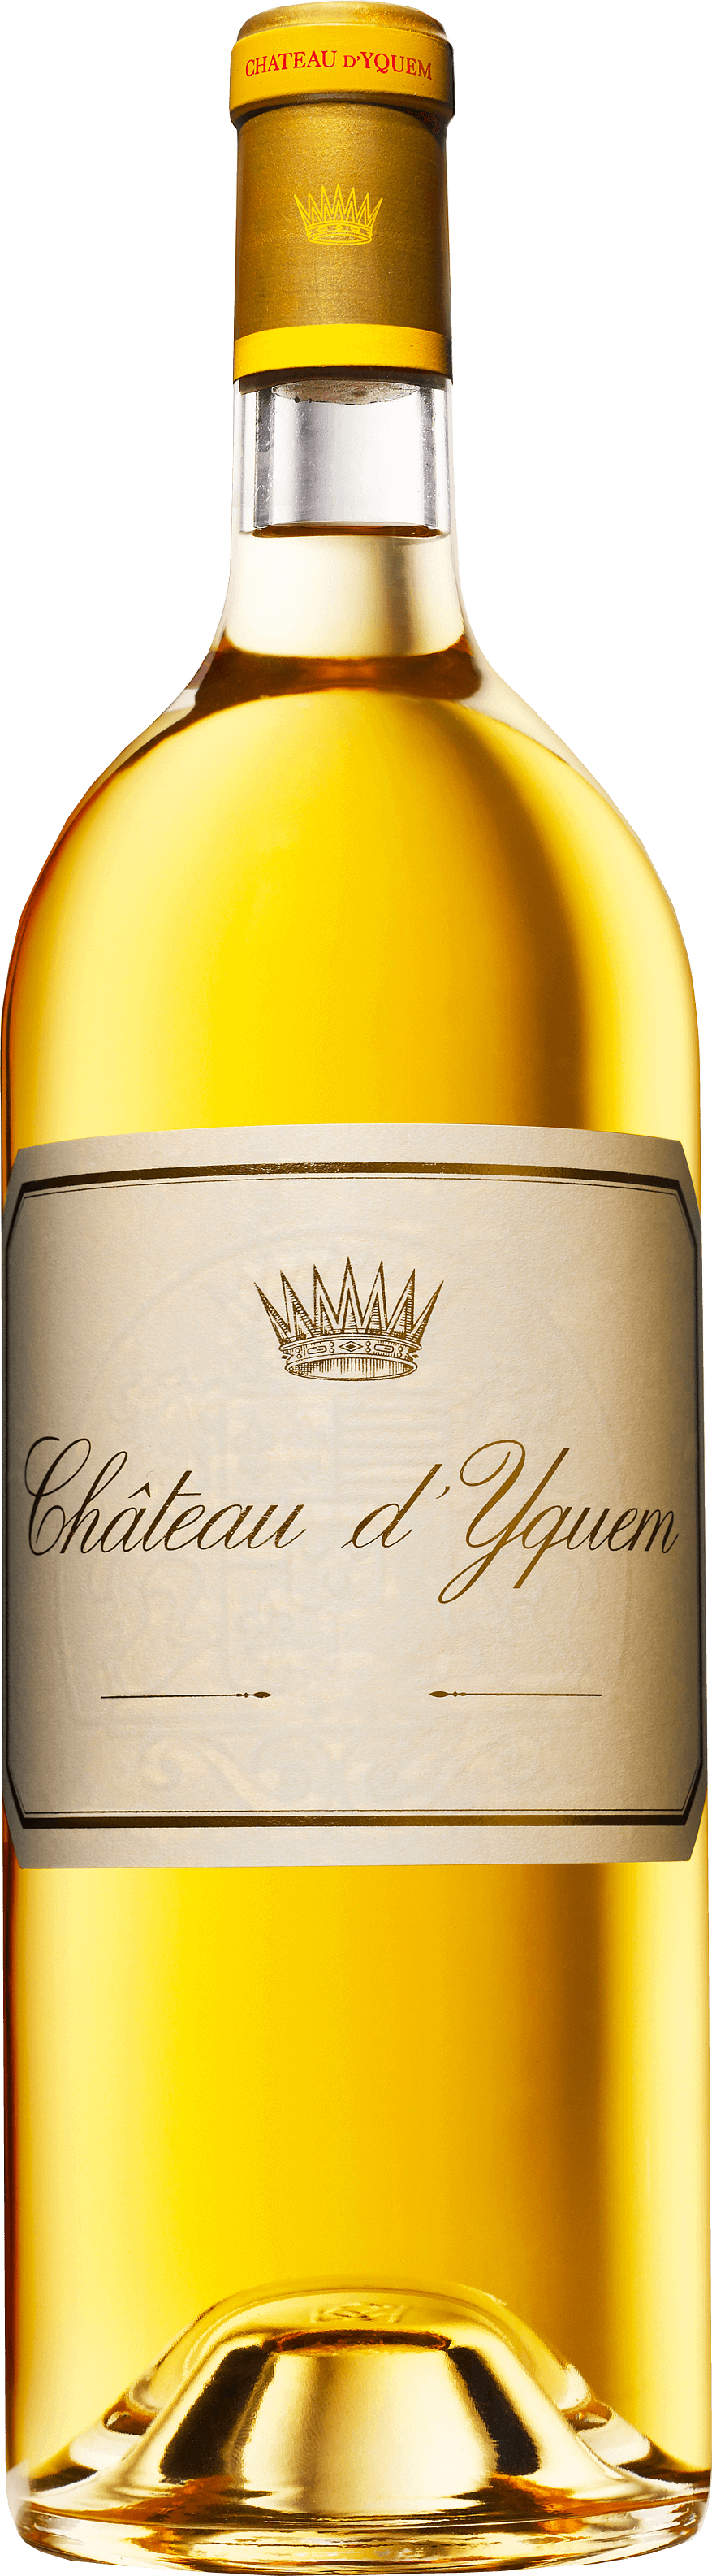 Yquem 2014 1er Cru Suprieur Sauternes, Bordeaux blanc